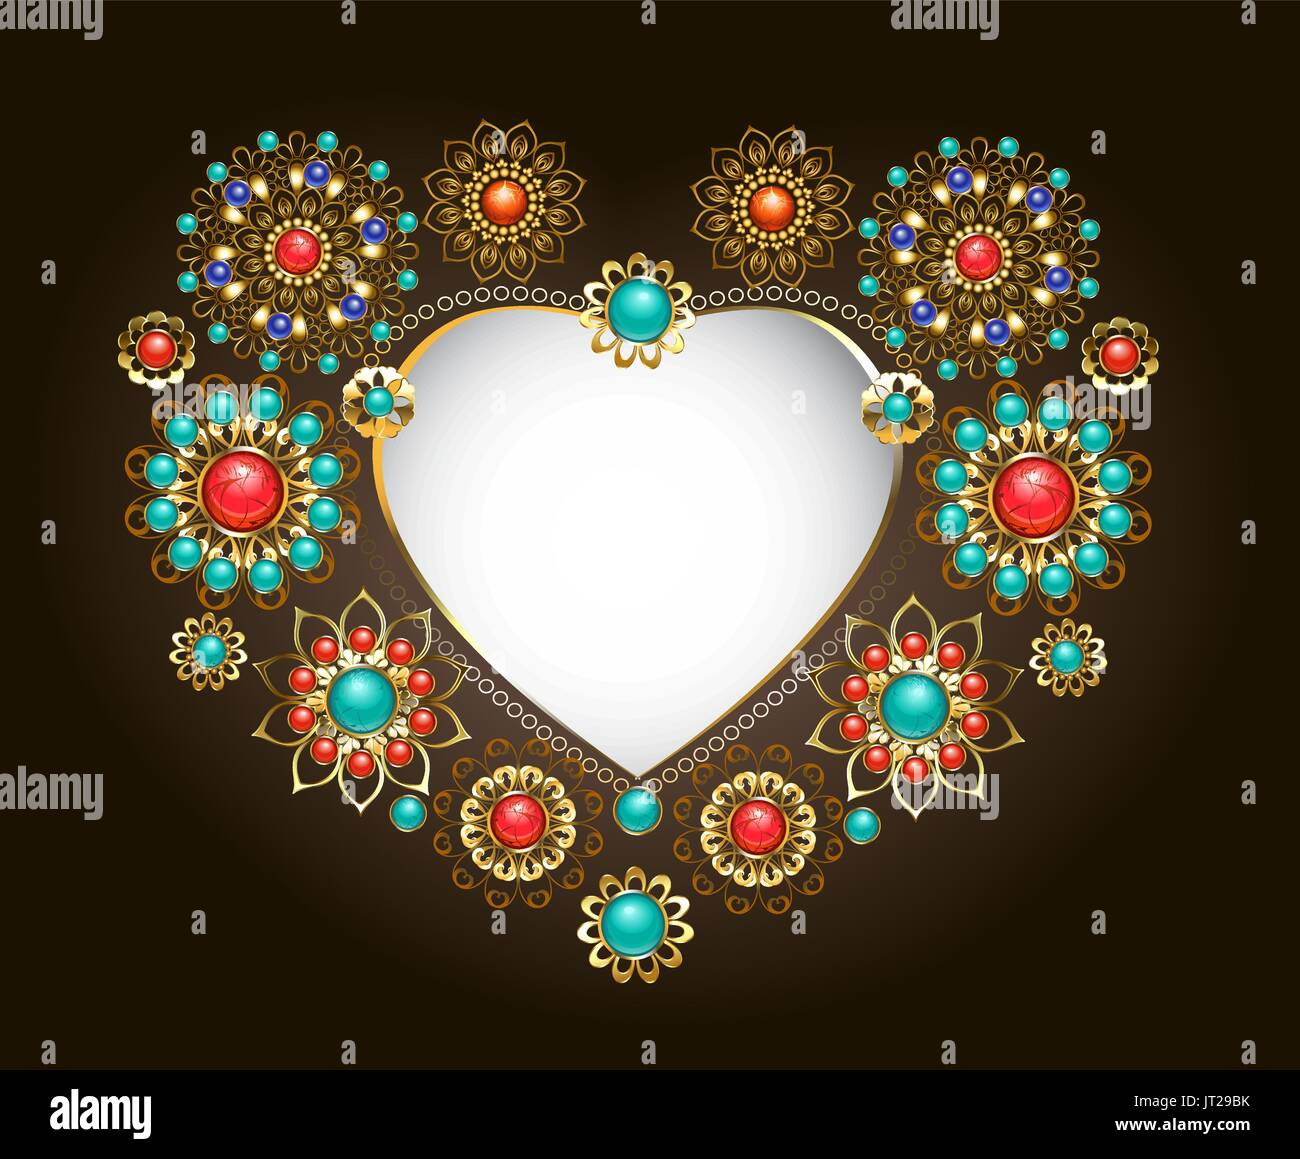 Telaio etniche nella forma di un cuore, decorata con turchese e jasper su uno sfondo scuro. Gioielli in stile Boho. Illustrazione Vettoriale